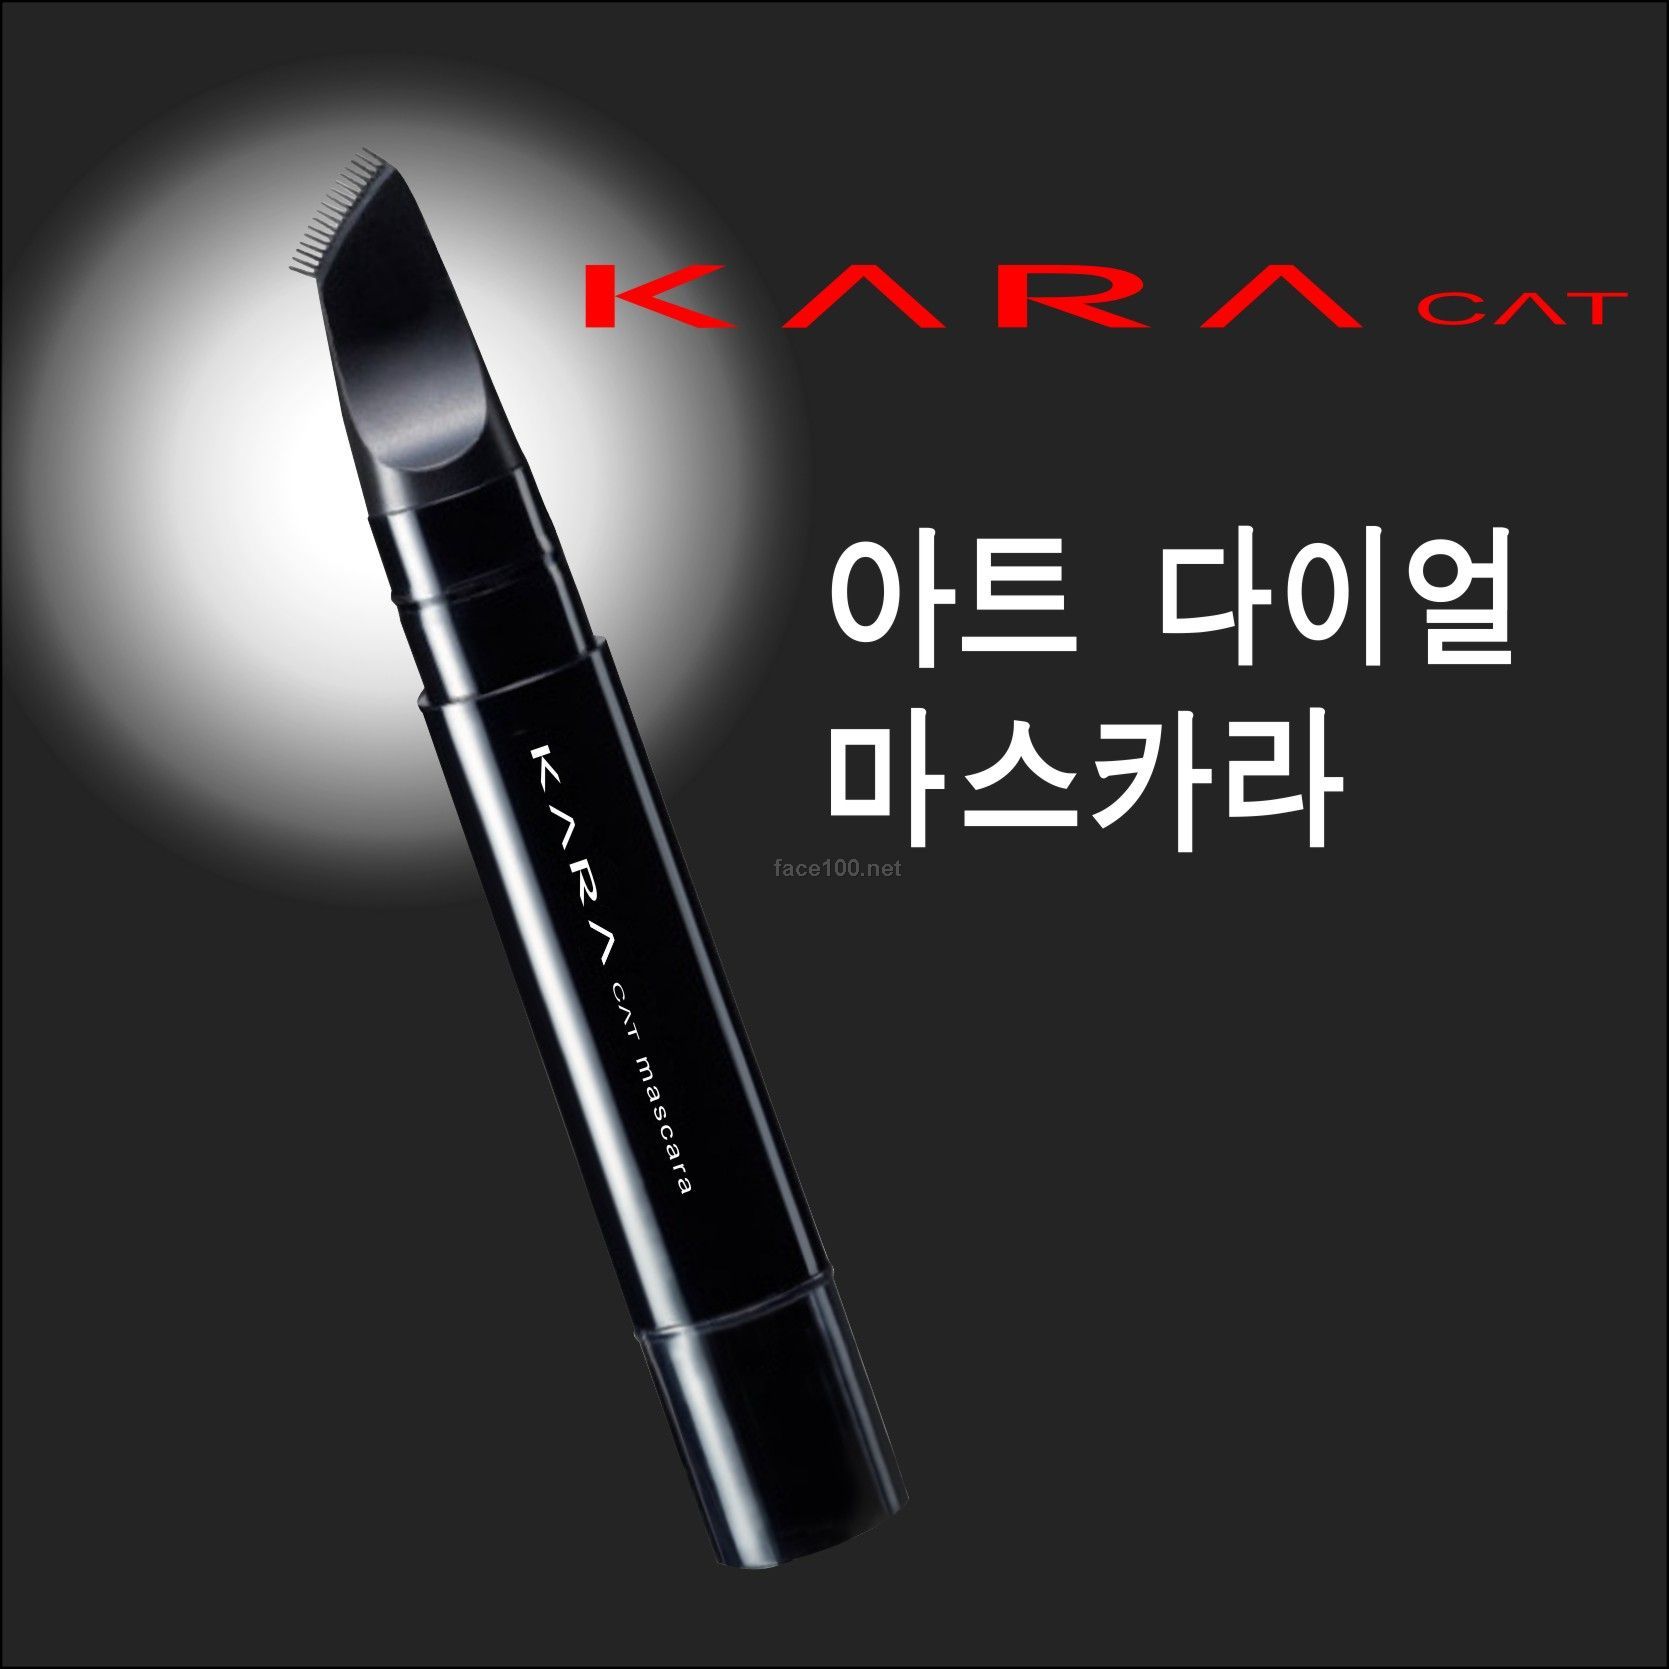 韩国天然KARA-cat植物彩妆